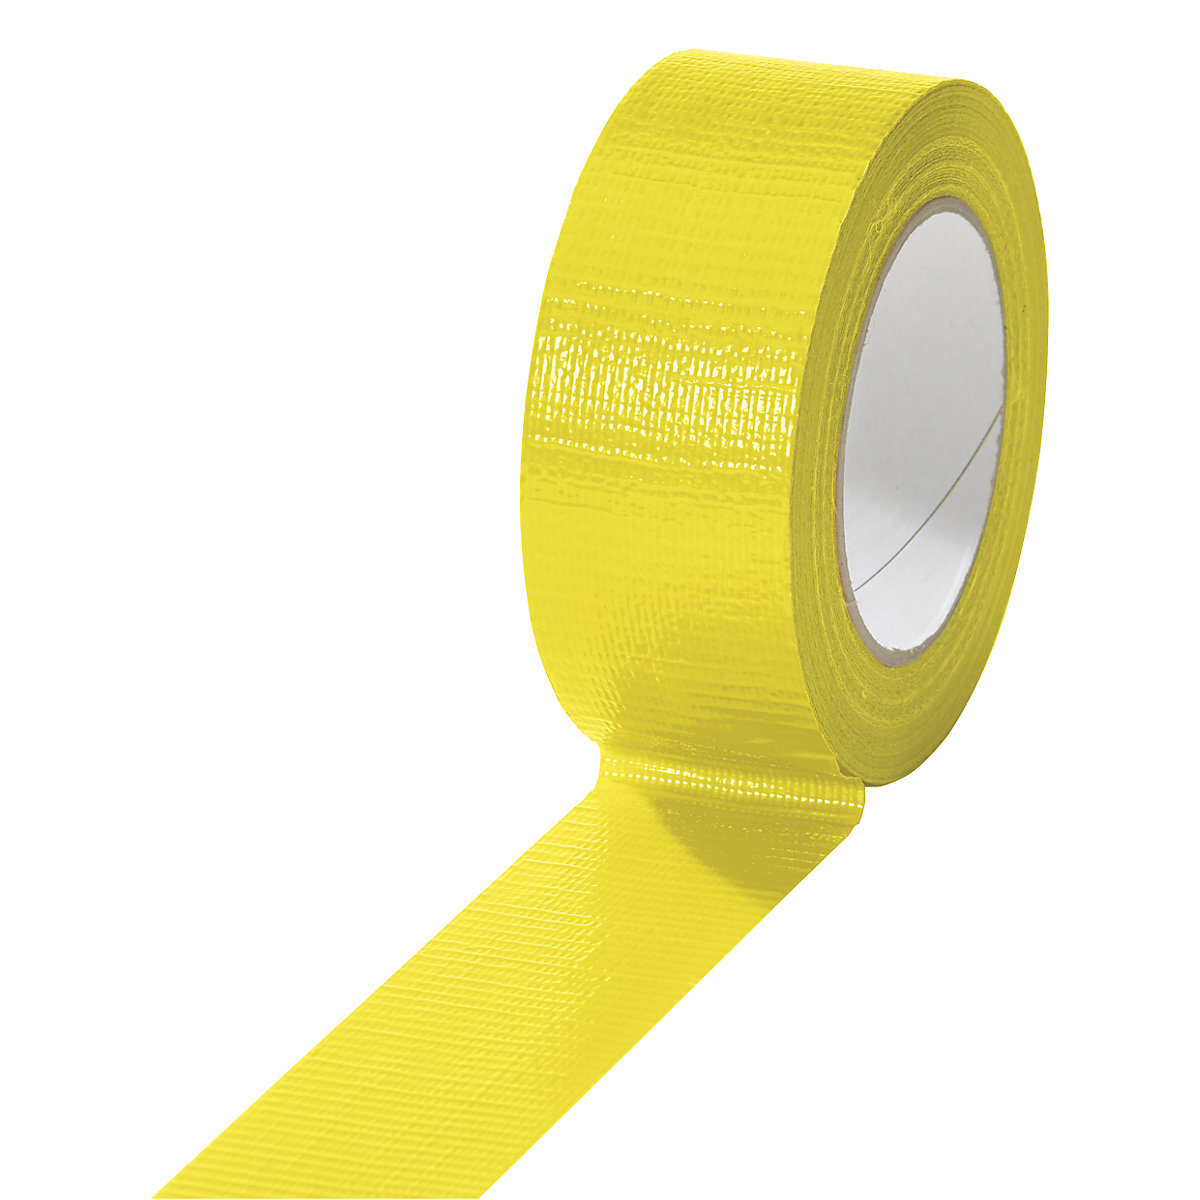 Cinta de tejido, en diferentes colores, UE 24 rollos, amarillo, anchura de cinta 38 mm-12